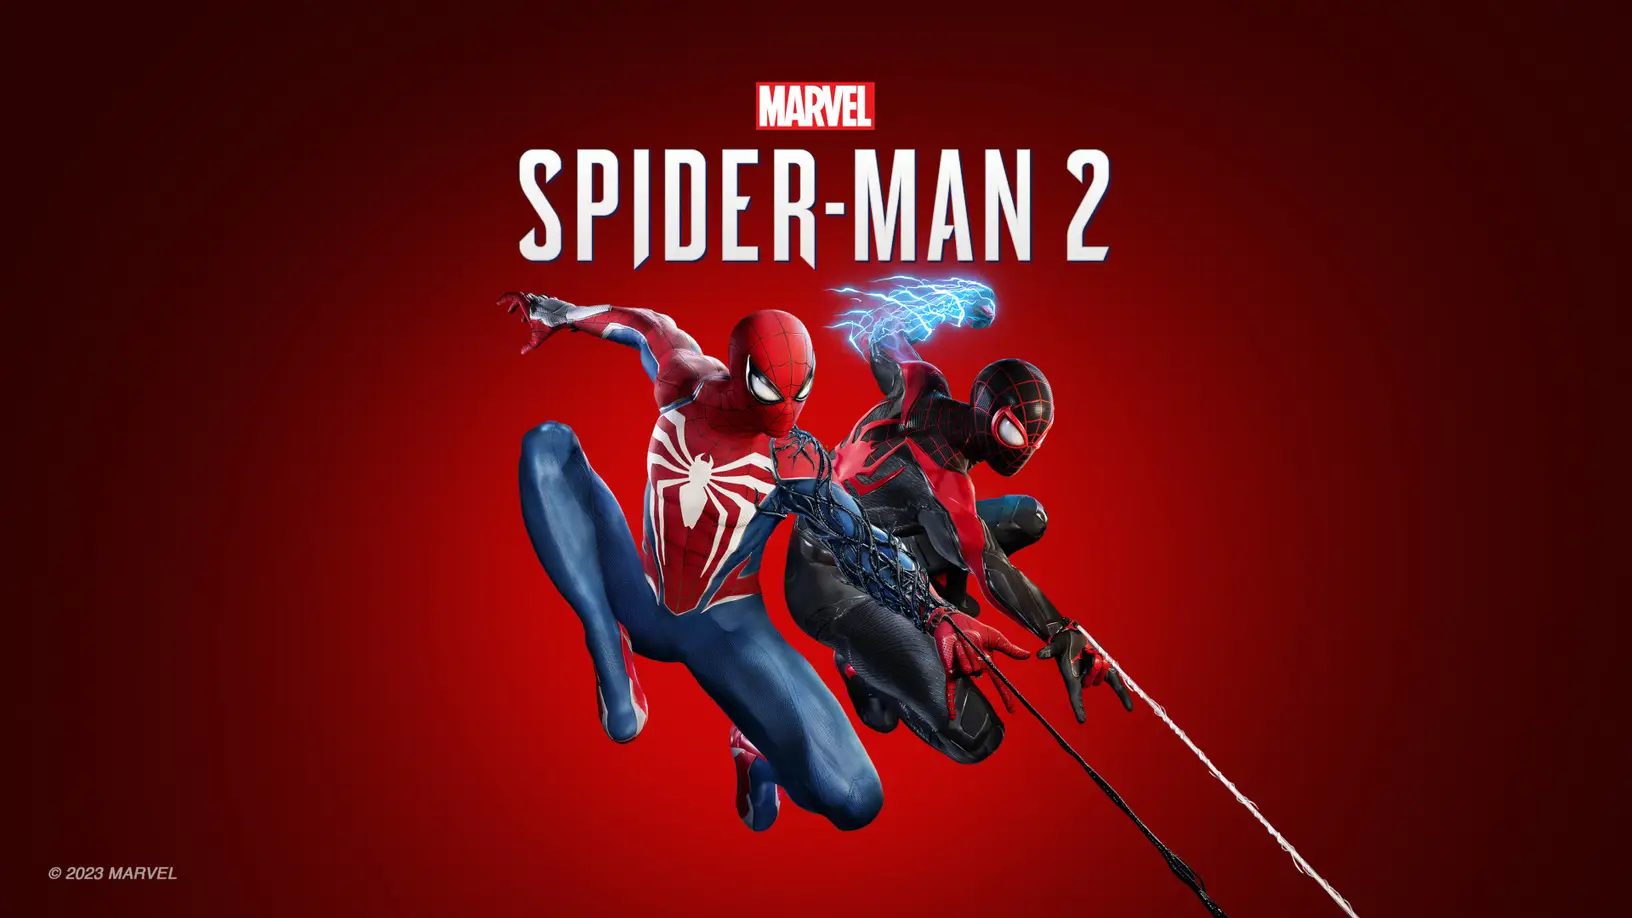 La Nueva PS5 Edición Spiderman 2 - Toda la Información Preventa y